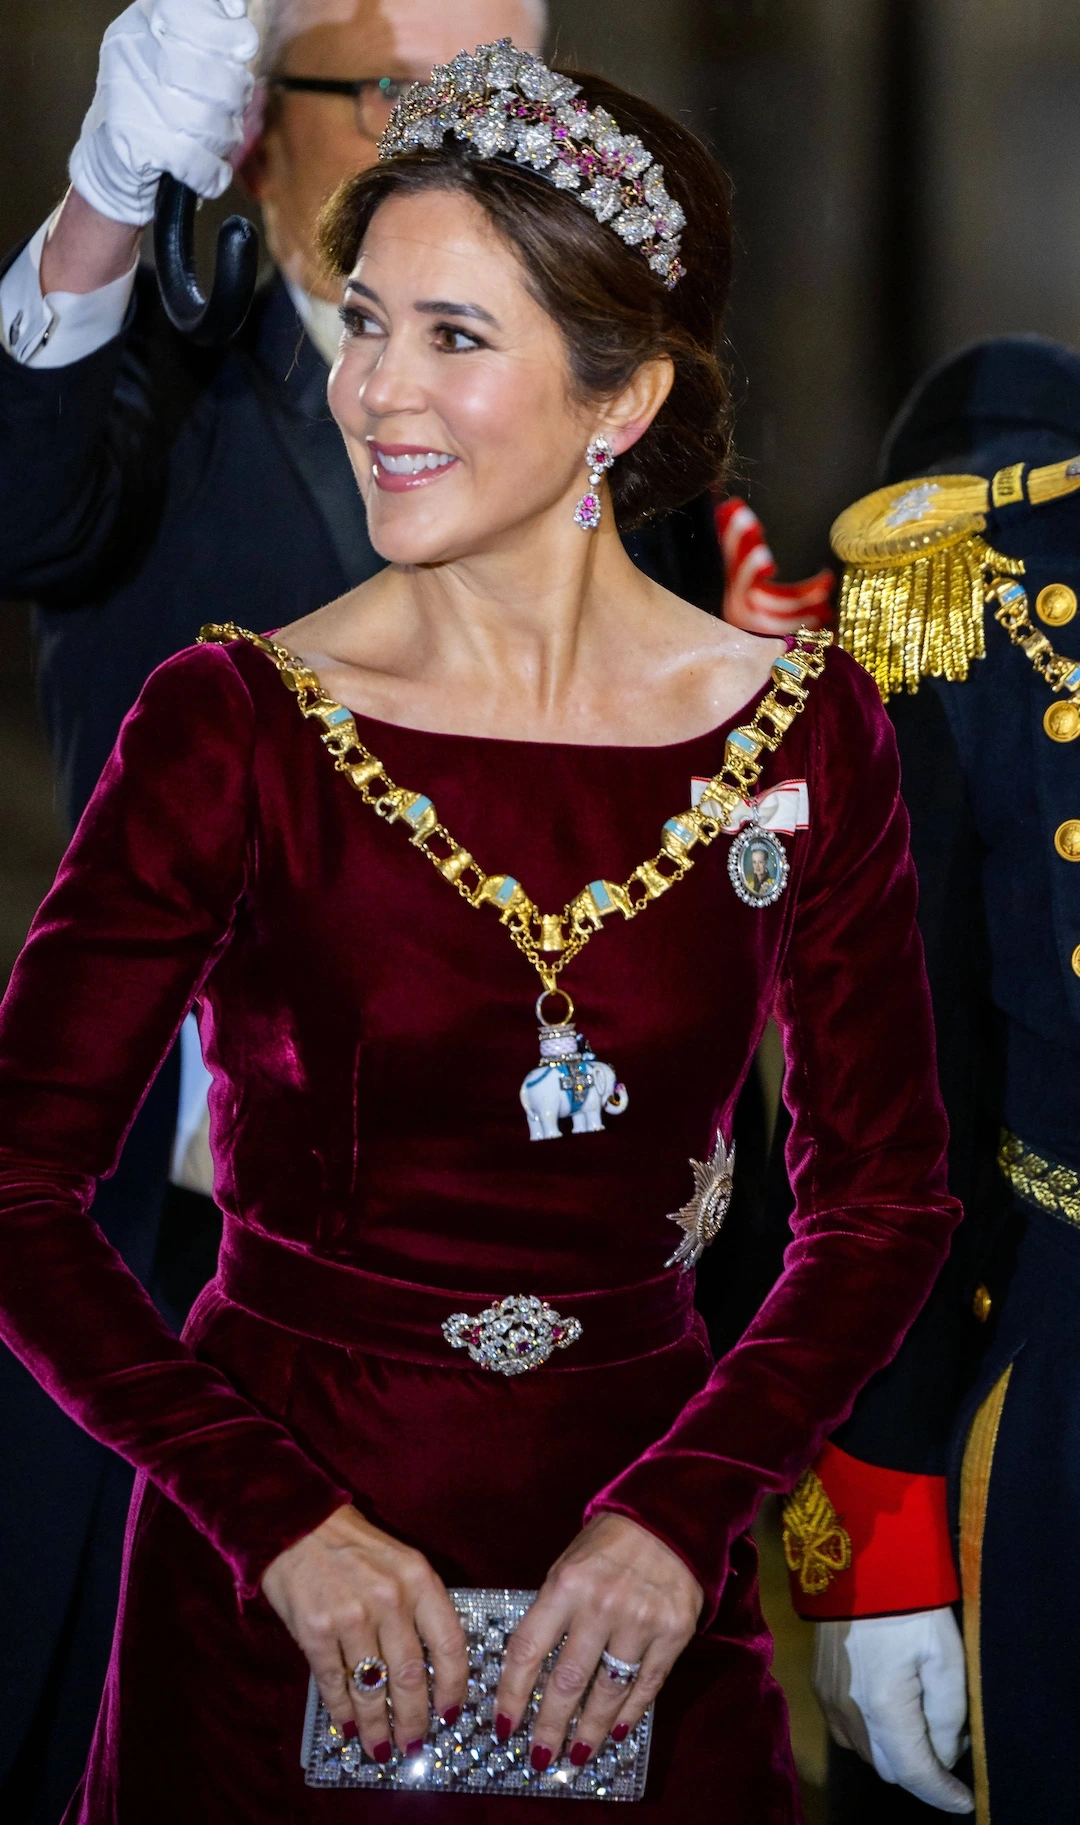 Dazu kombinierte die vierfache Mutter die Dänische Rubinen Parure Tiara sowie Ohrringe und Brosche aus dem Set. © IMAGO / PPE